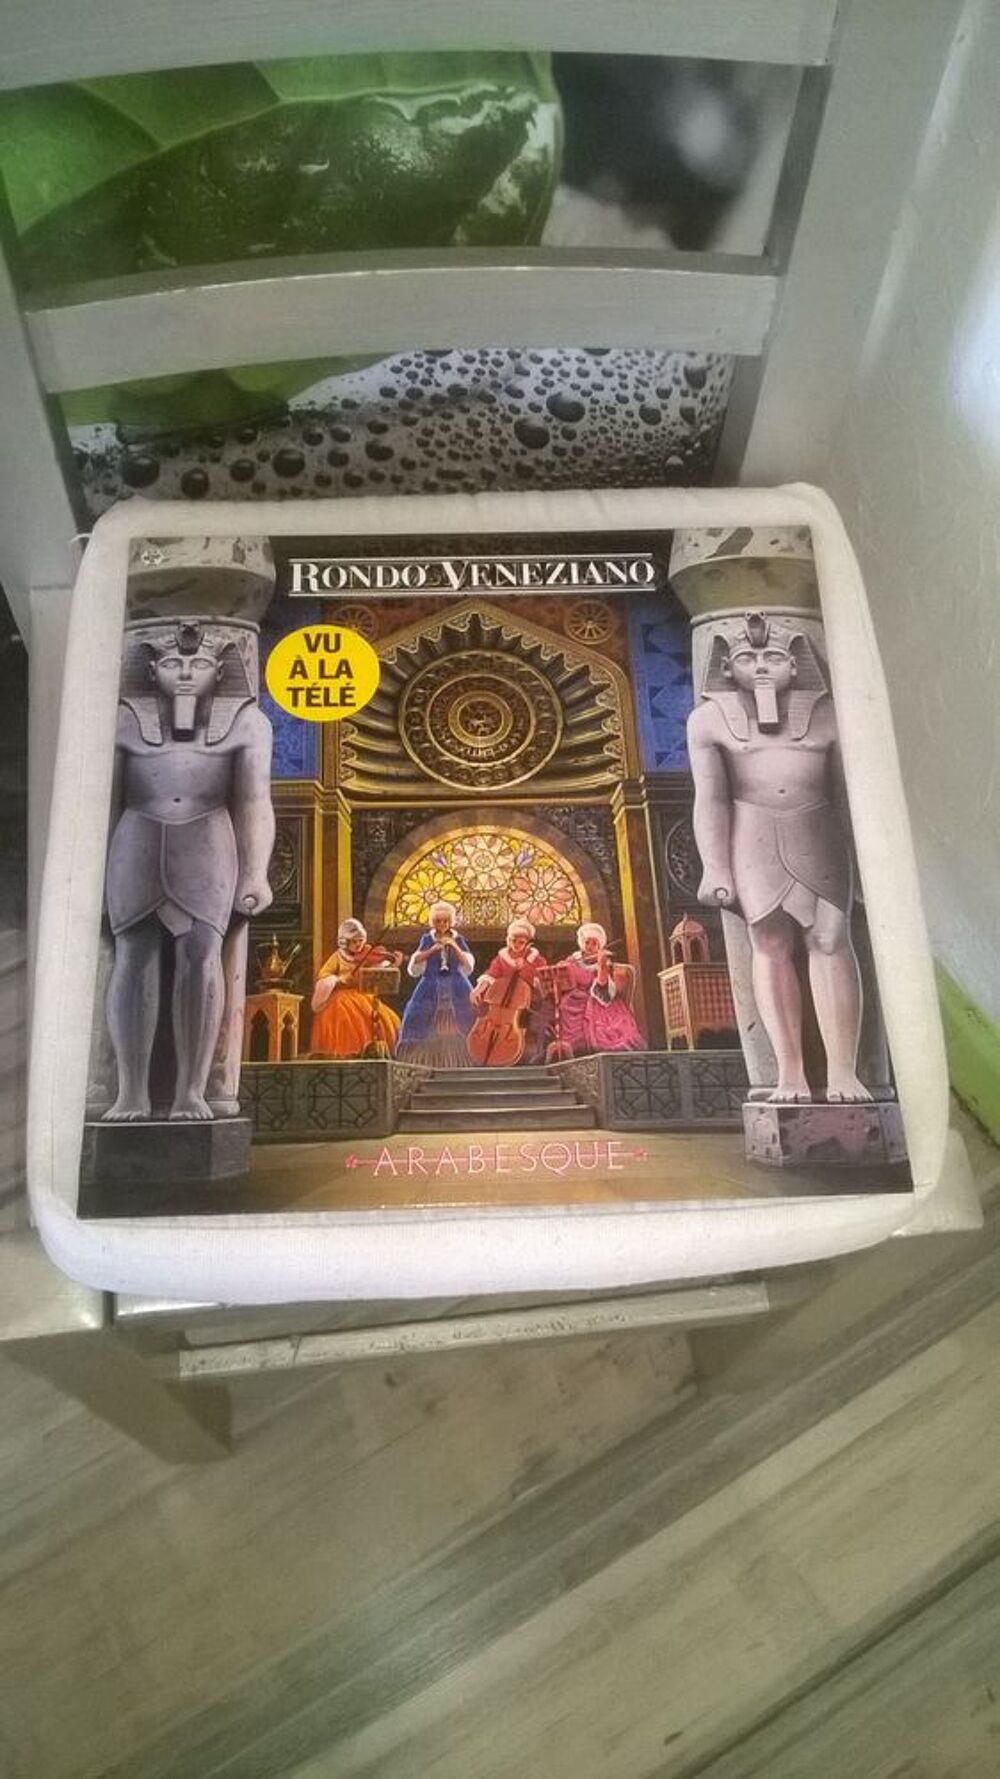 Vinyle Rond&ograve; Veneziano
Arabesque
1987
Excellent etat
Lis CD et vinyles